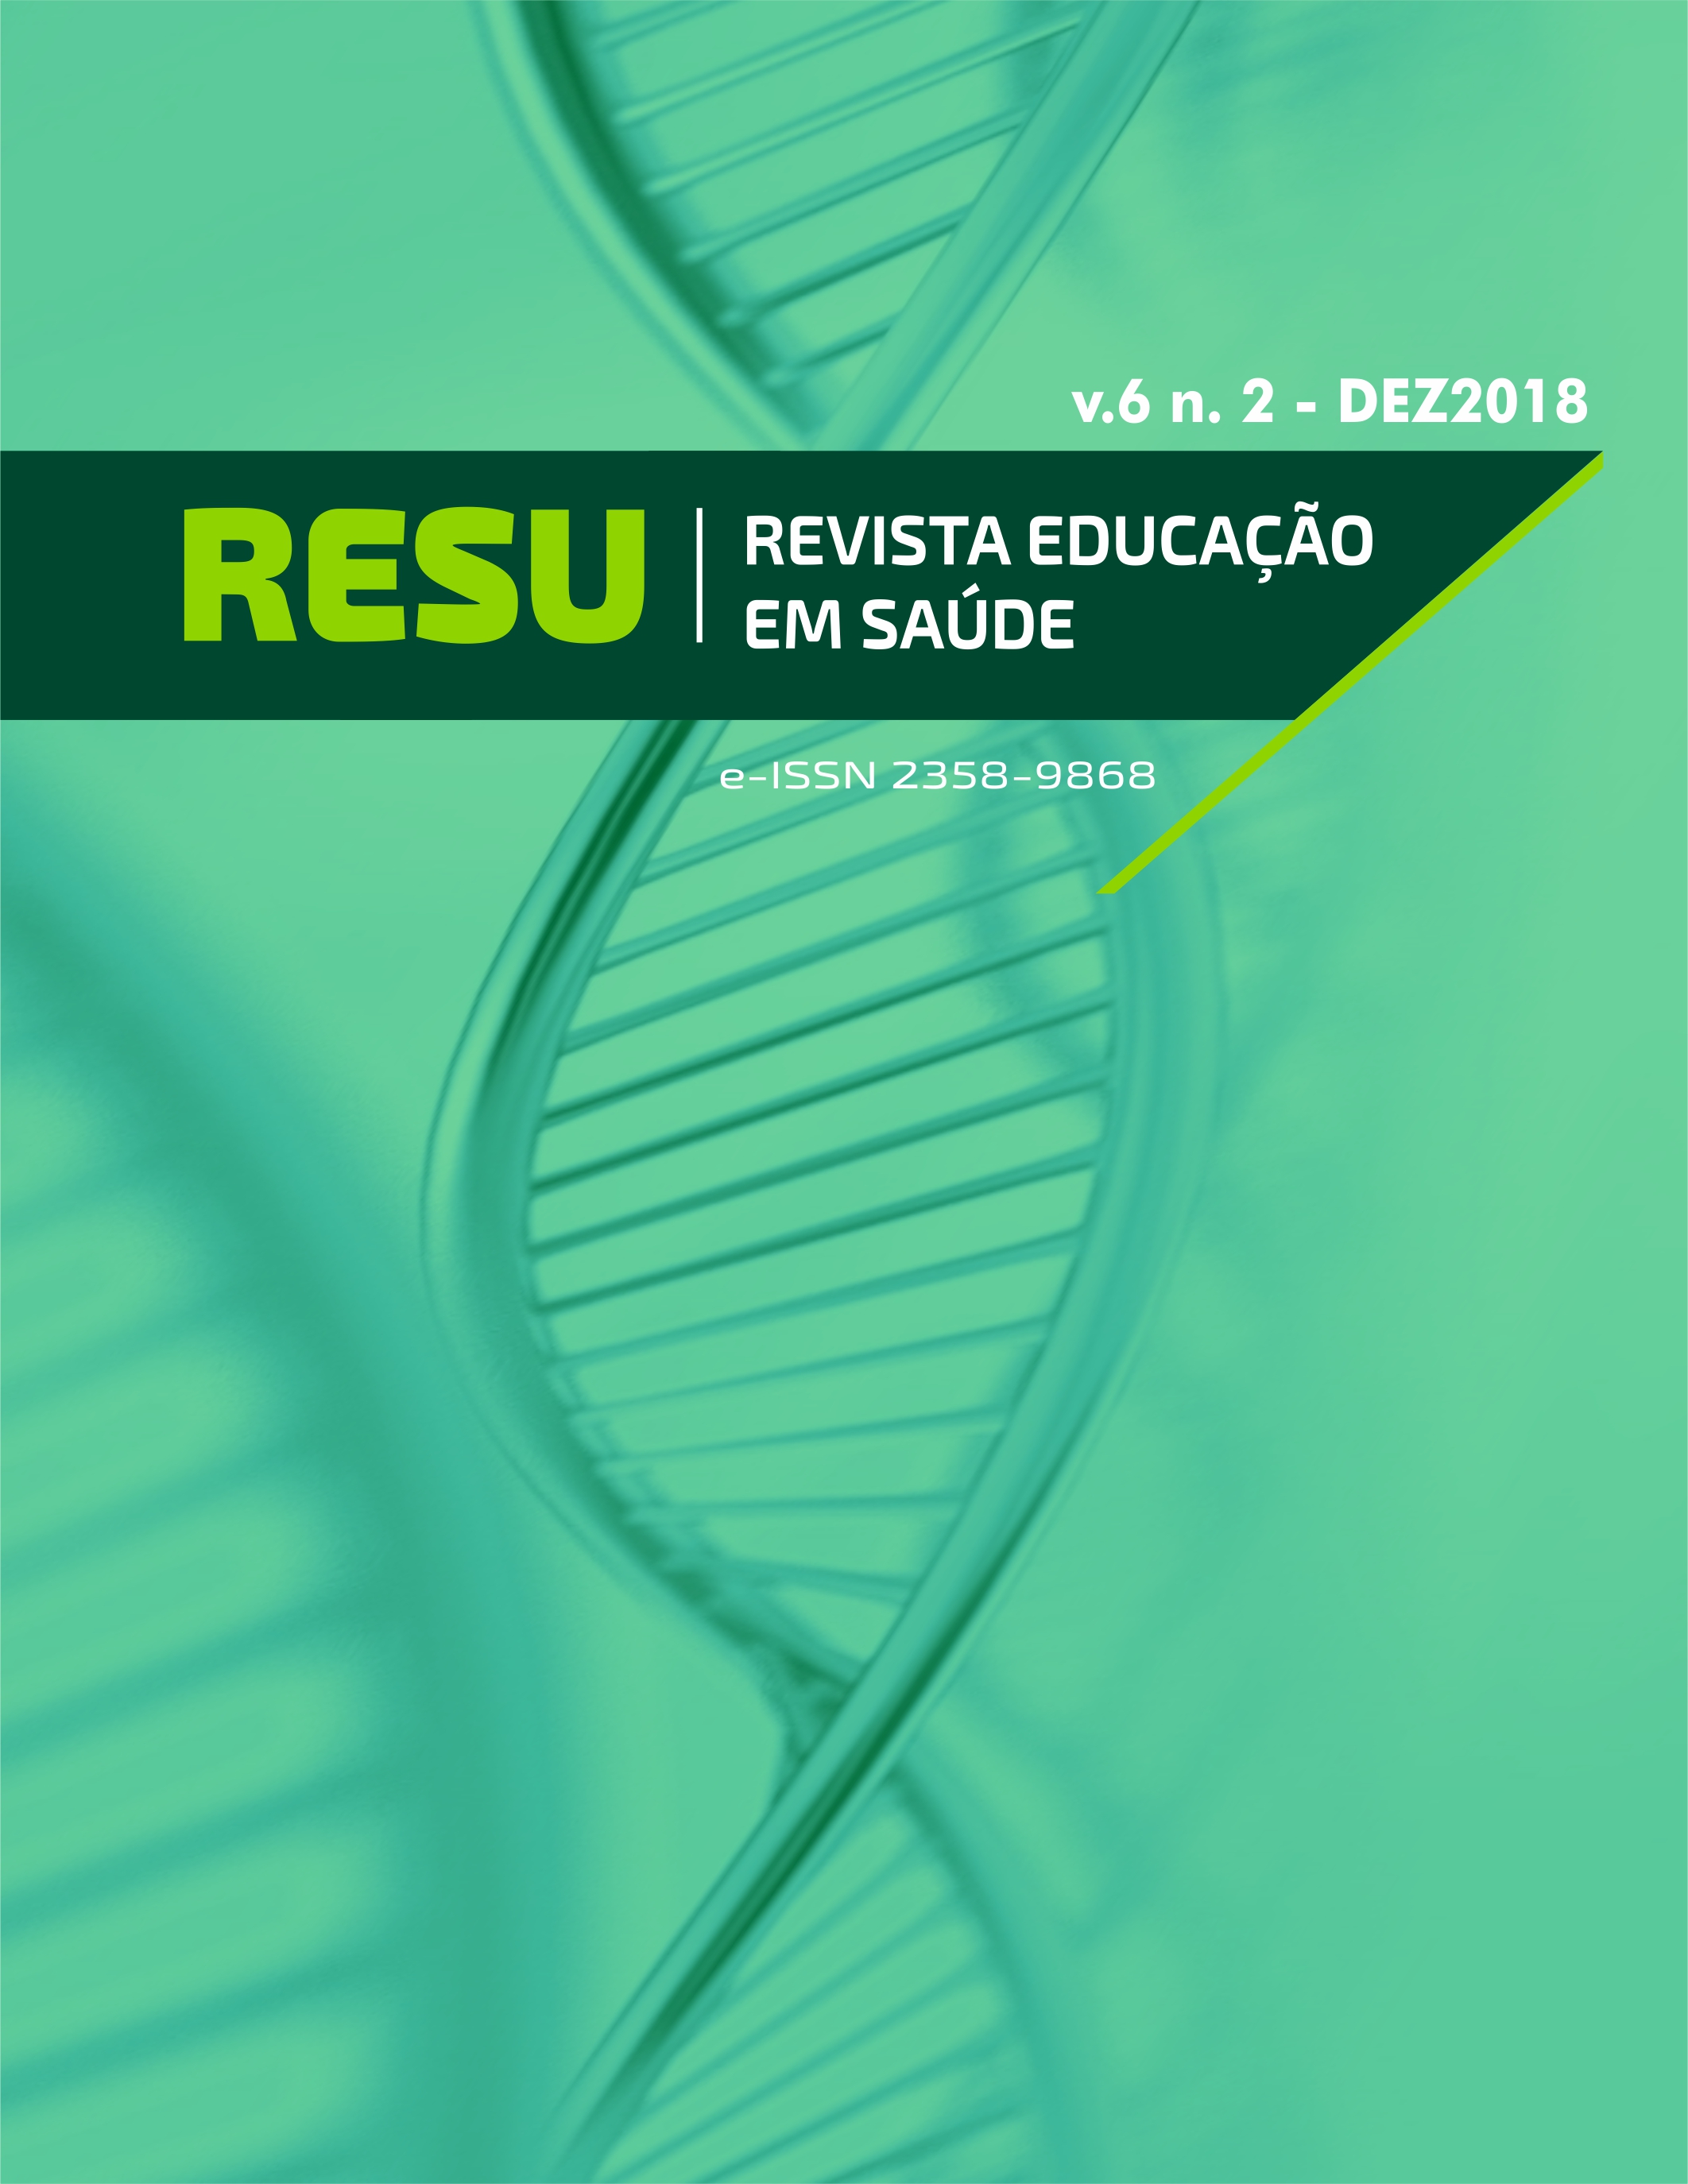 					Visualizar v. 6 n. 2 (2018): RESU - REVISTA EDUCAÇÃO EM SAÚDE
				